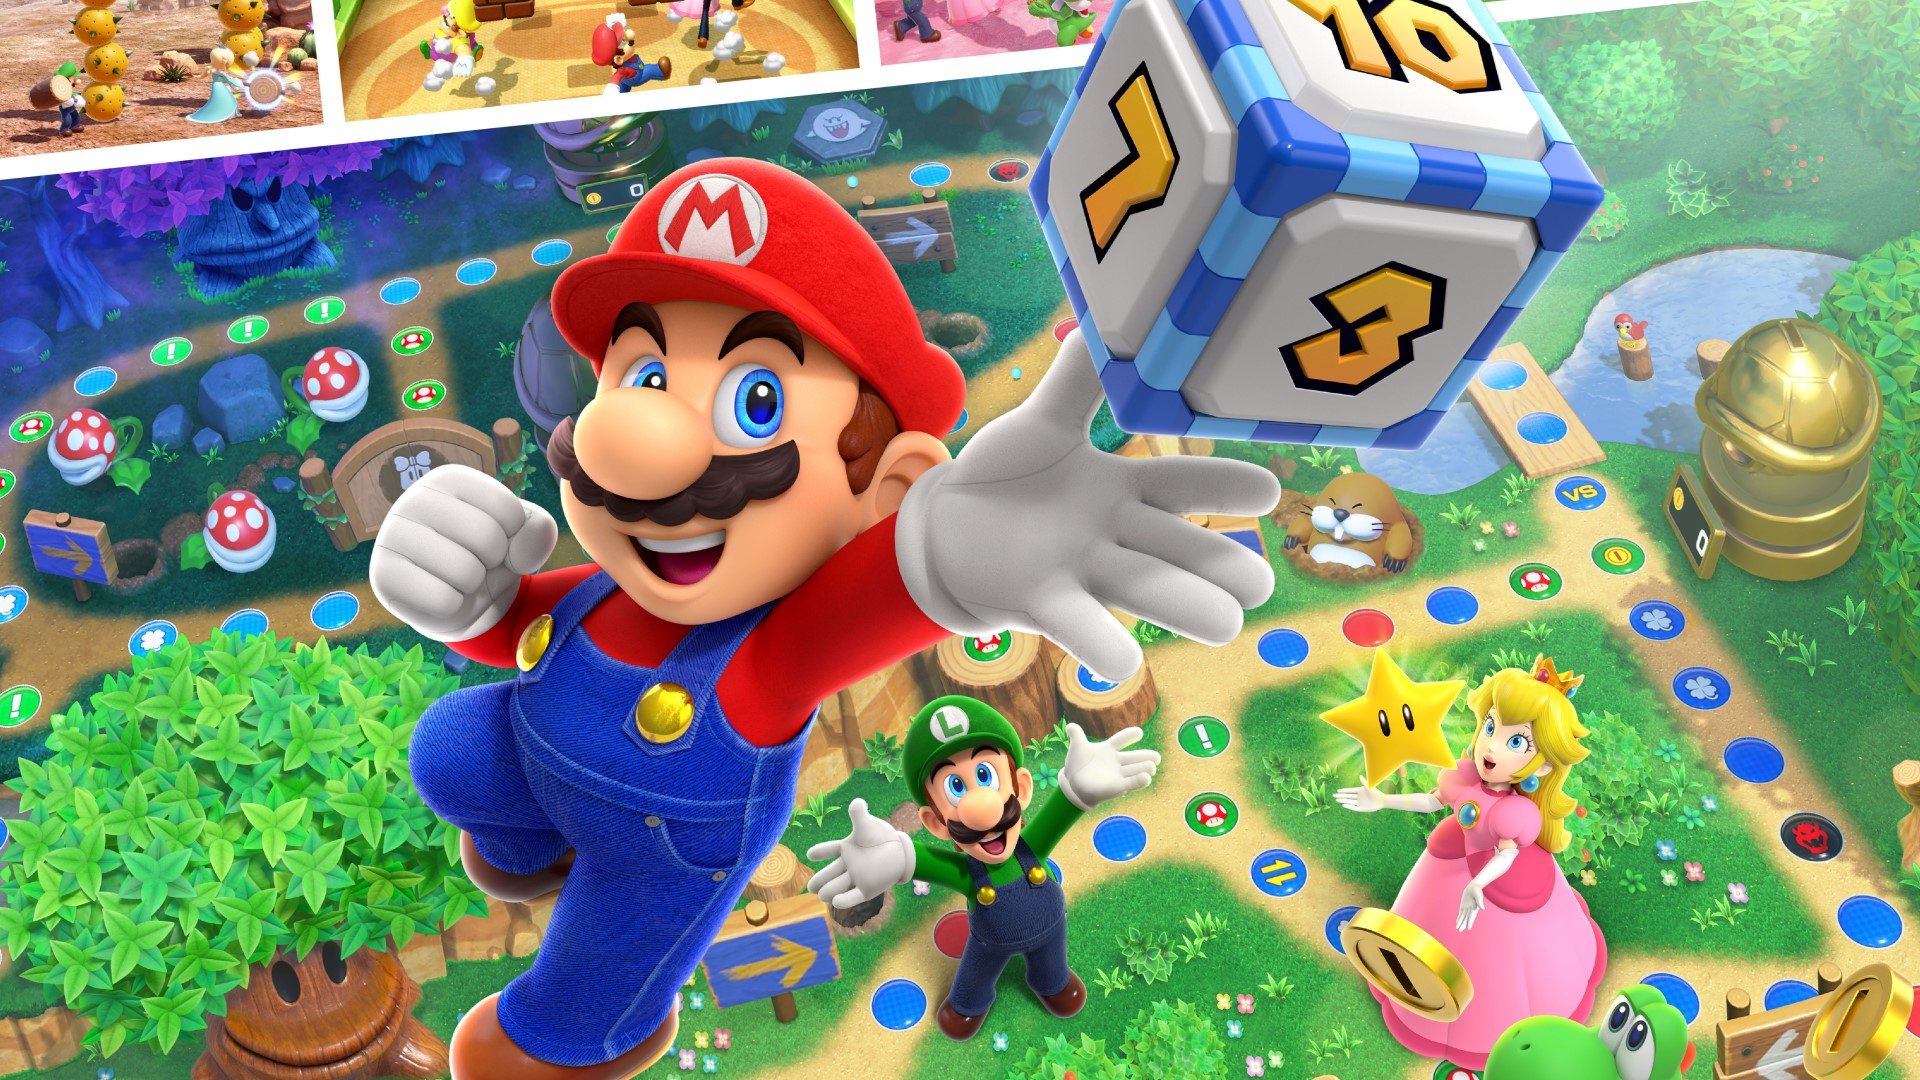 Laden Sie Mario Party Superstars HD-Desktop-Hintergründe herunter